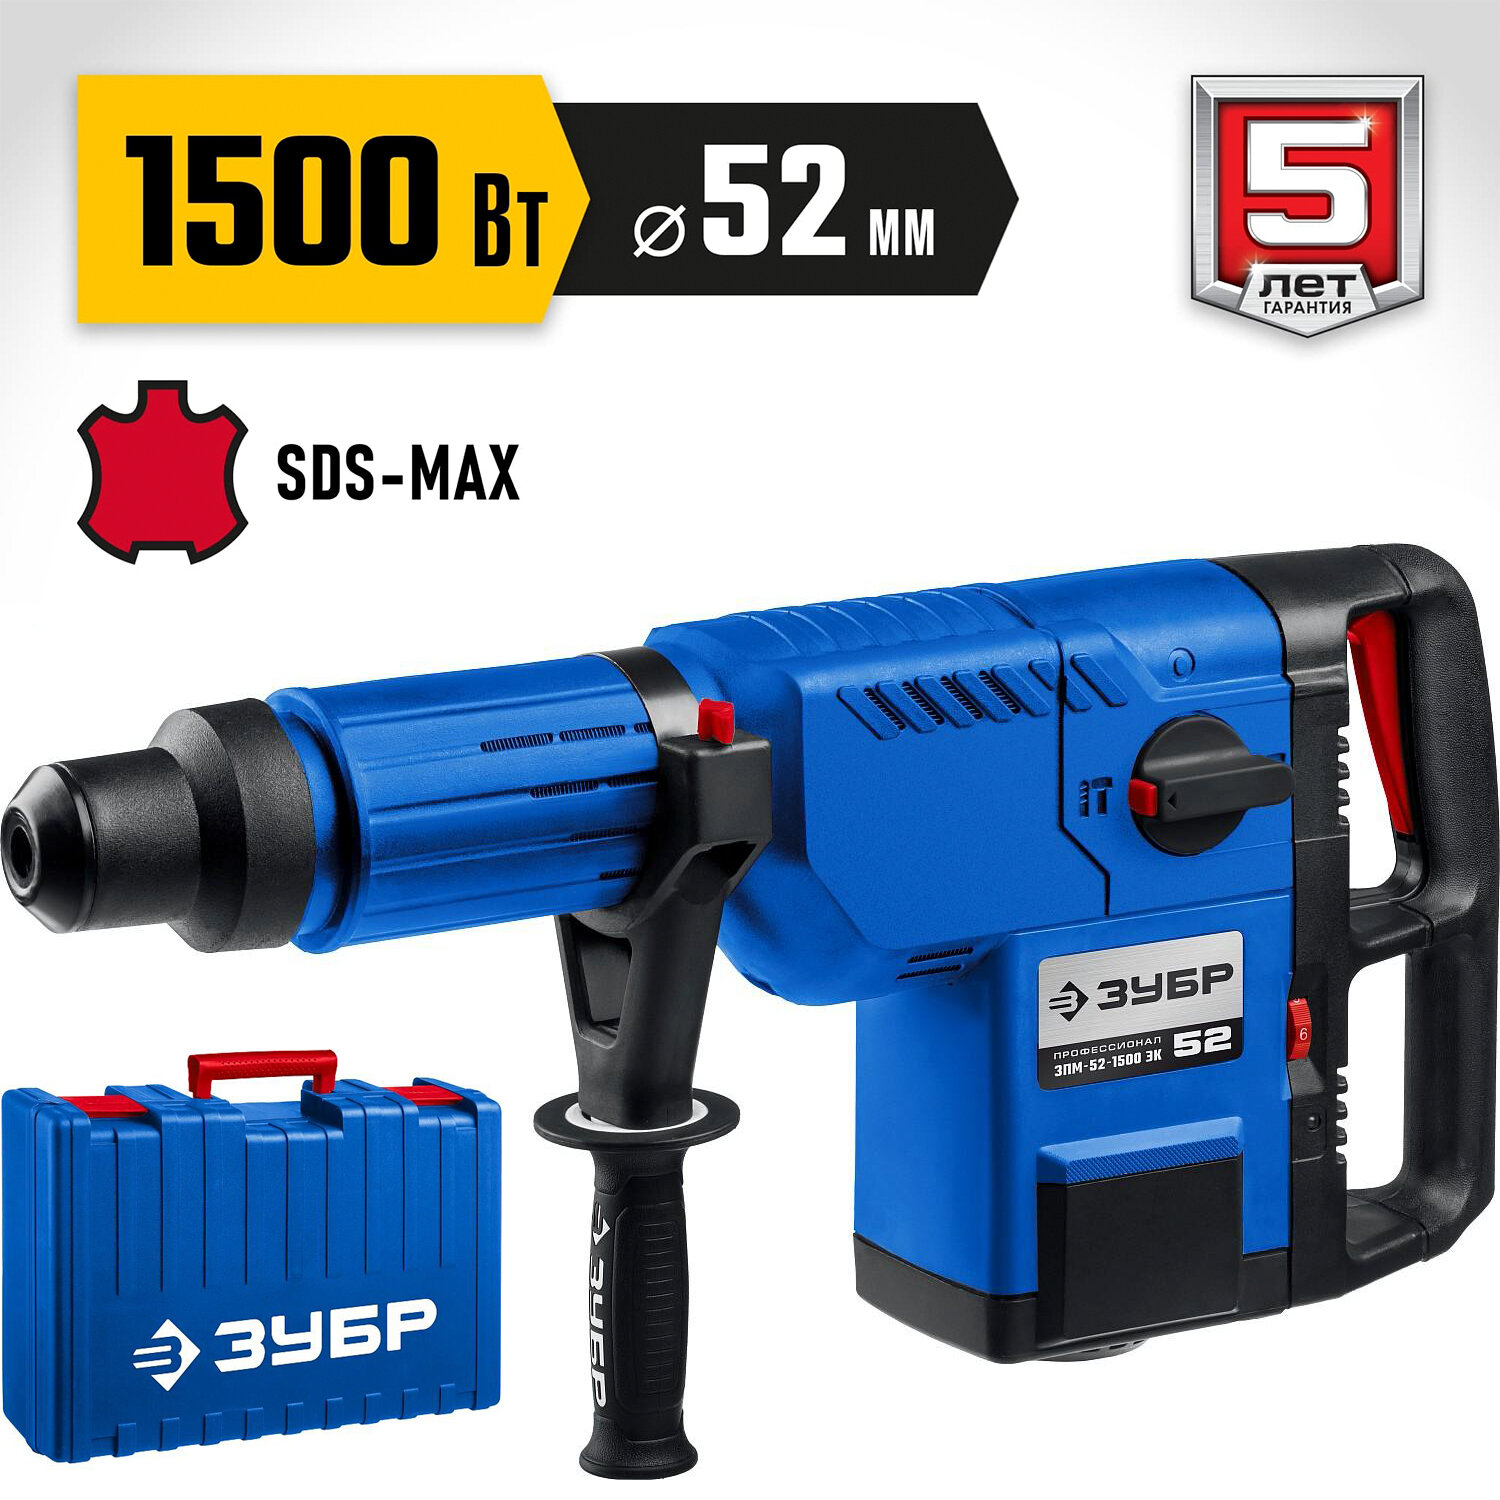 Перфоратор SDS Max Профессионал 52 мм. / 1500 Вт.